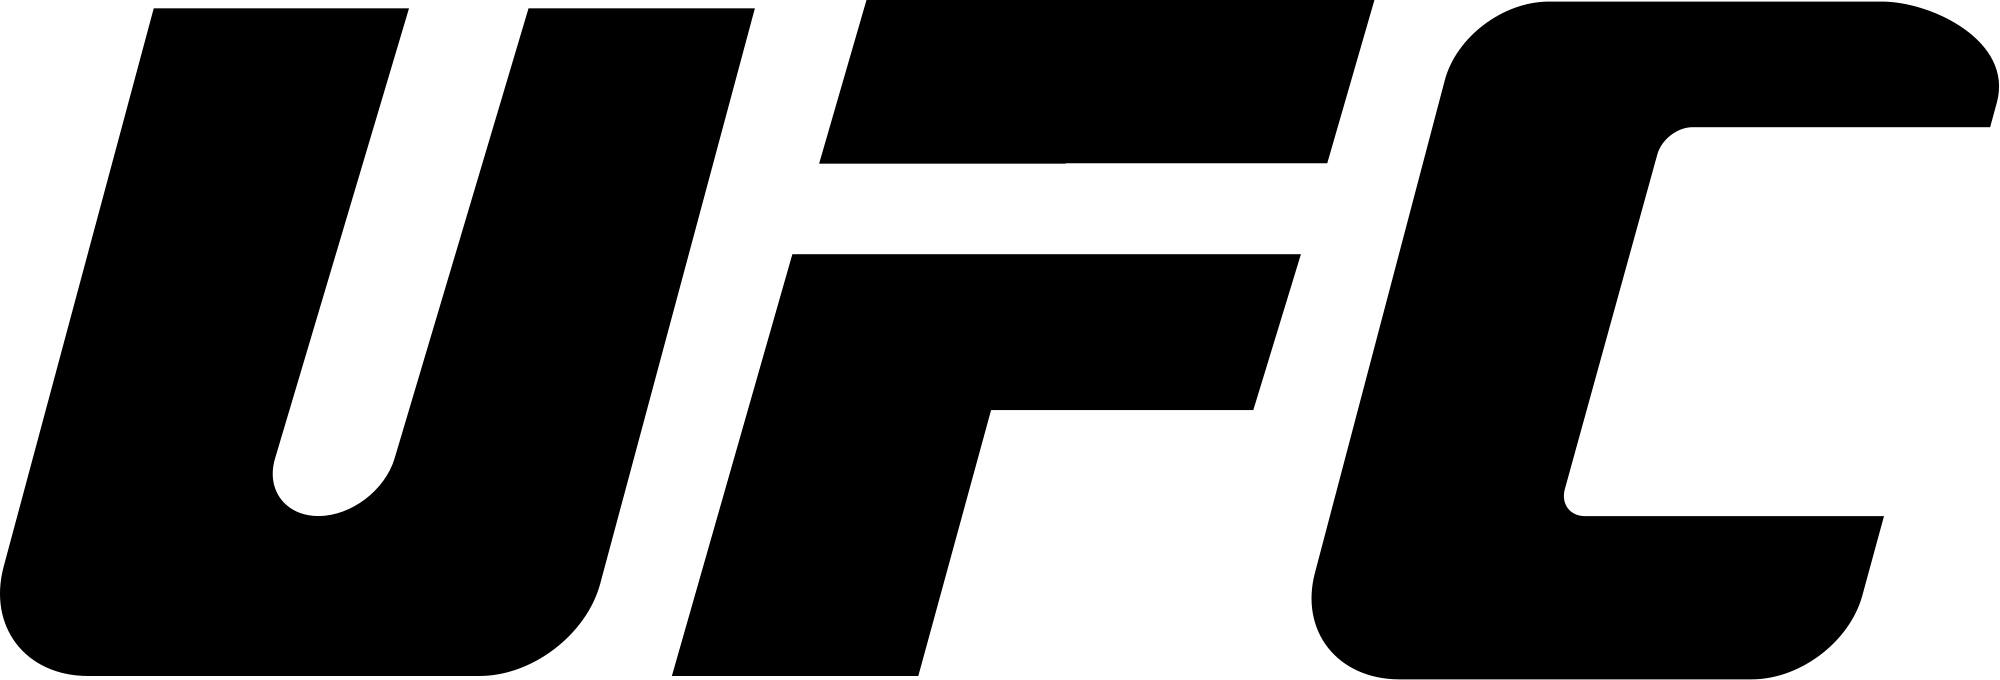 UFC Logo - File:UFC logo.svg - Wikimedia Commons